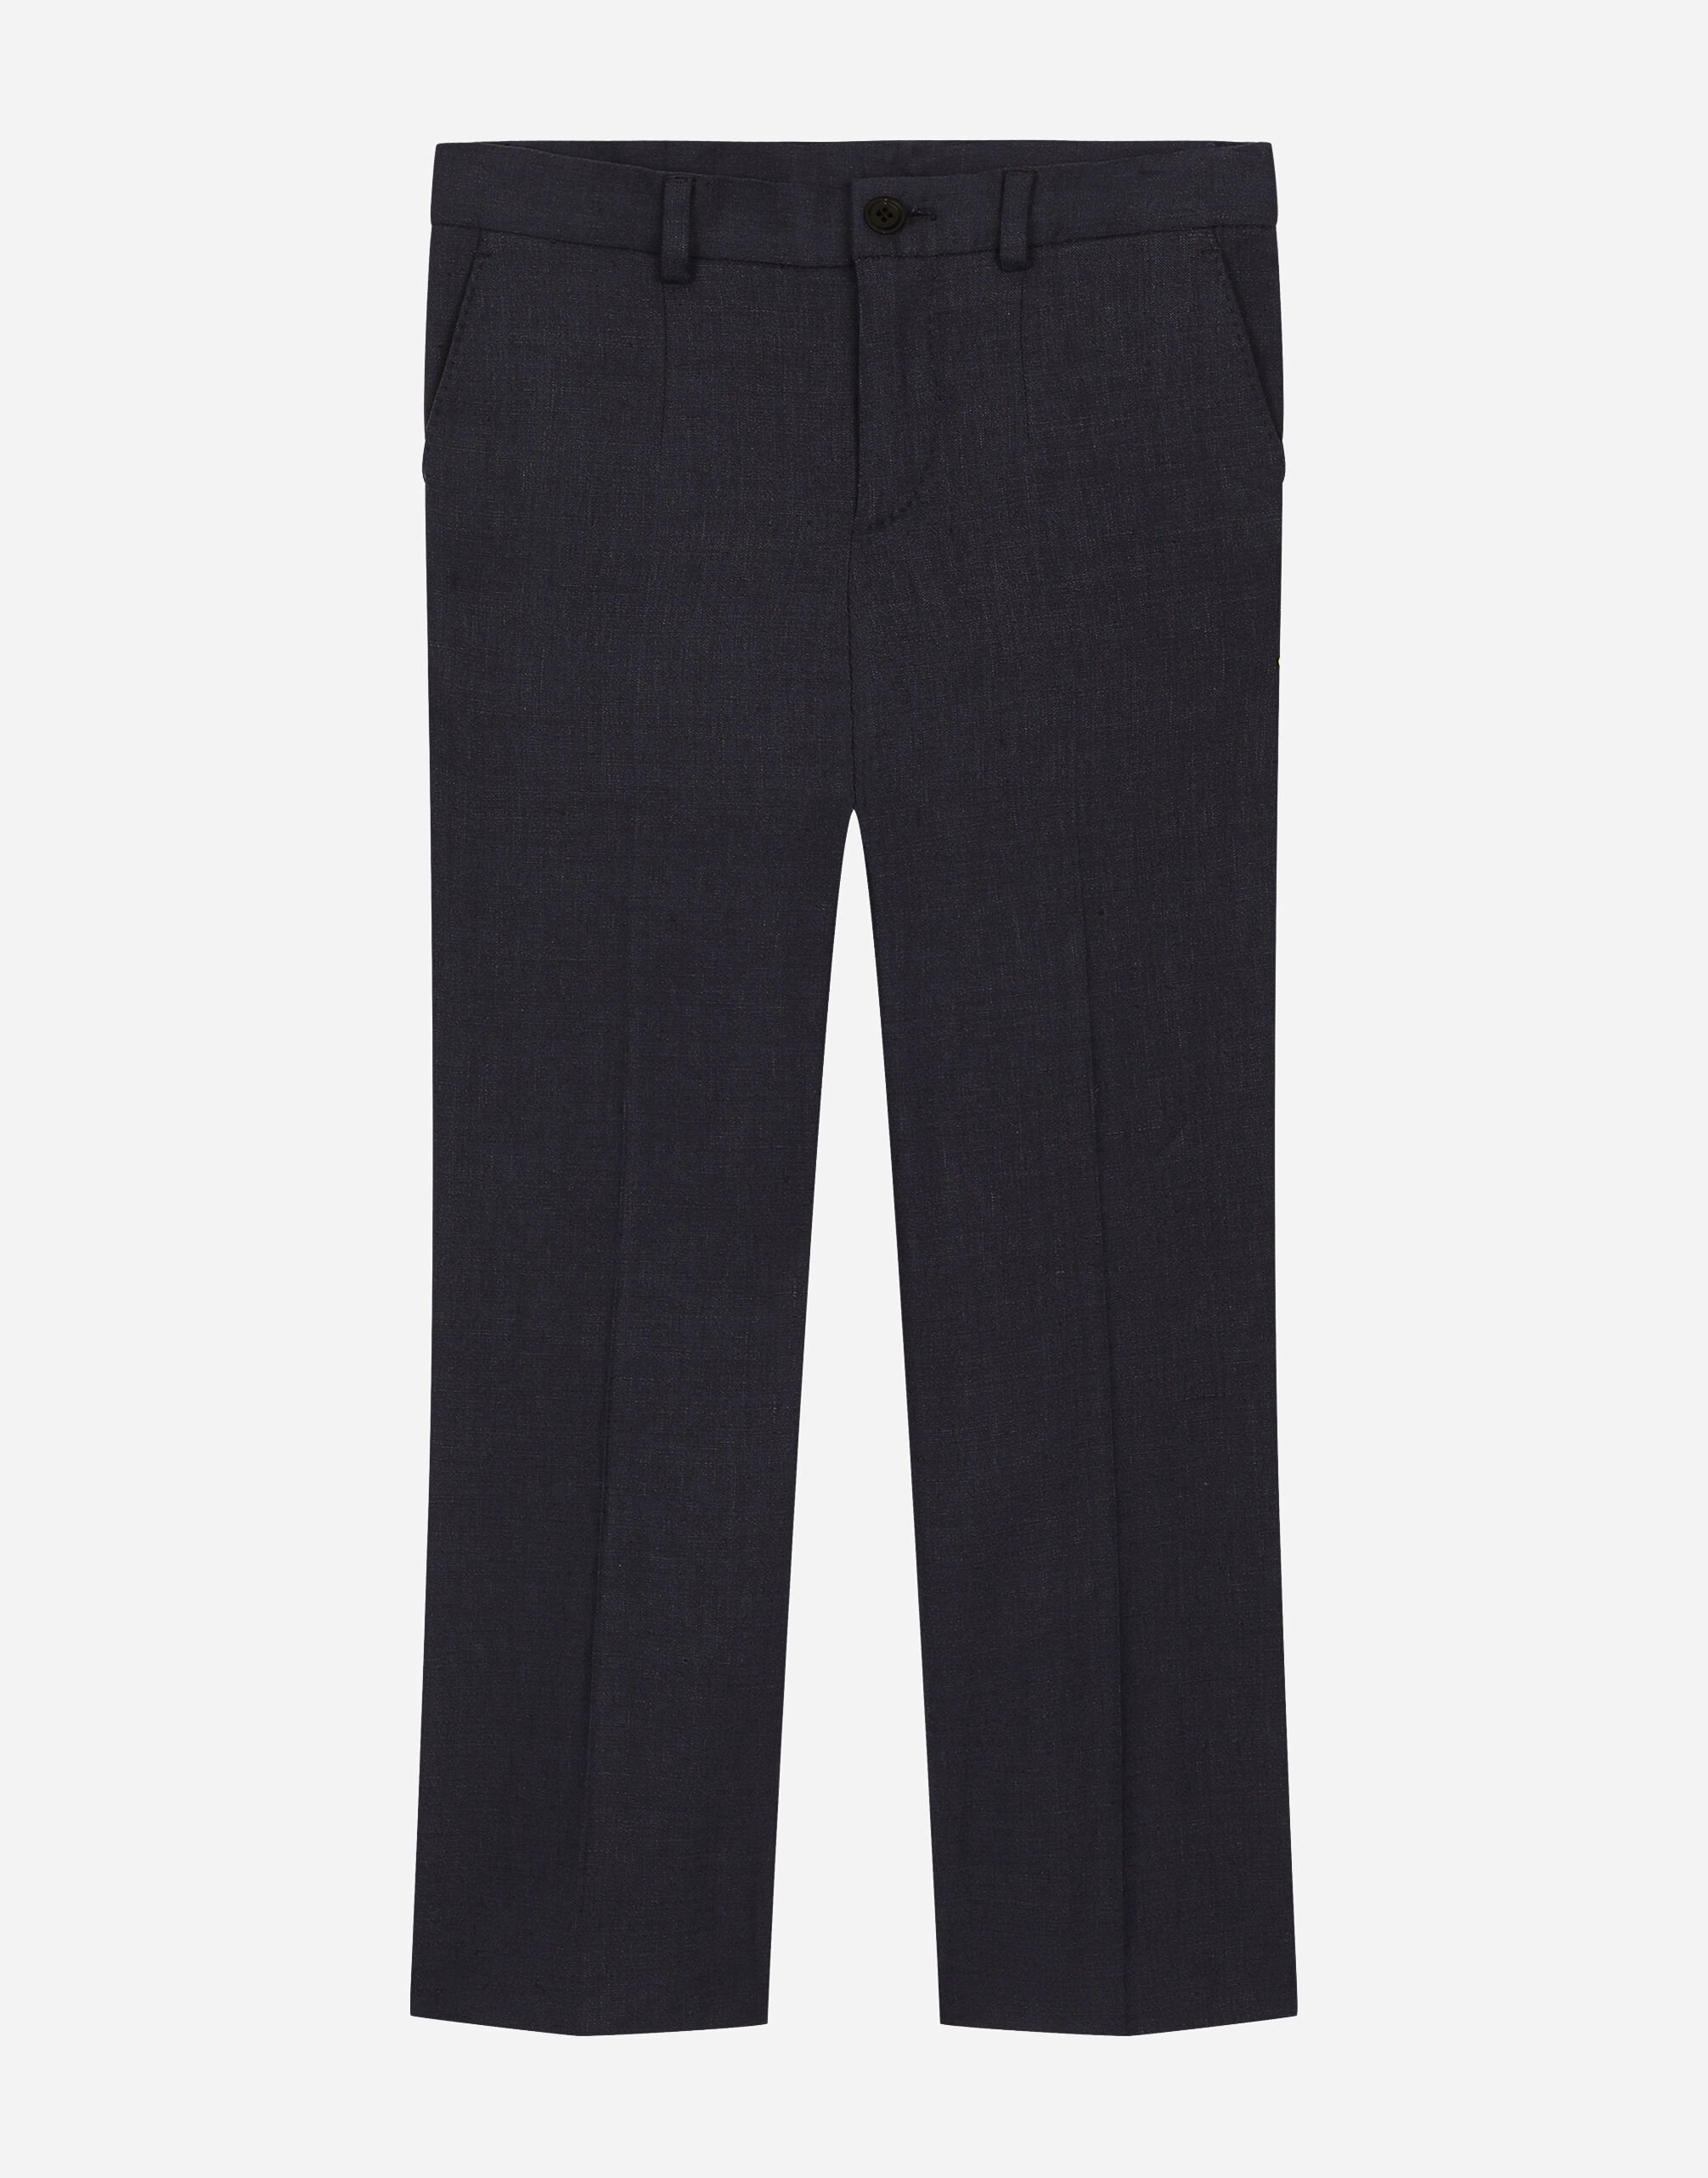 Dolce & Gabbana Classic linen fabric pants Print L53DR2HS5QR